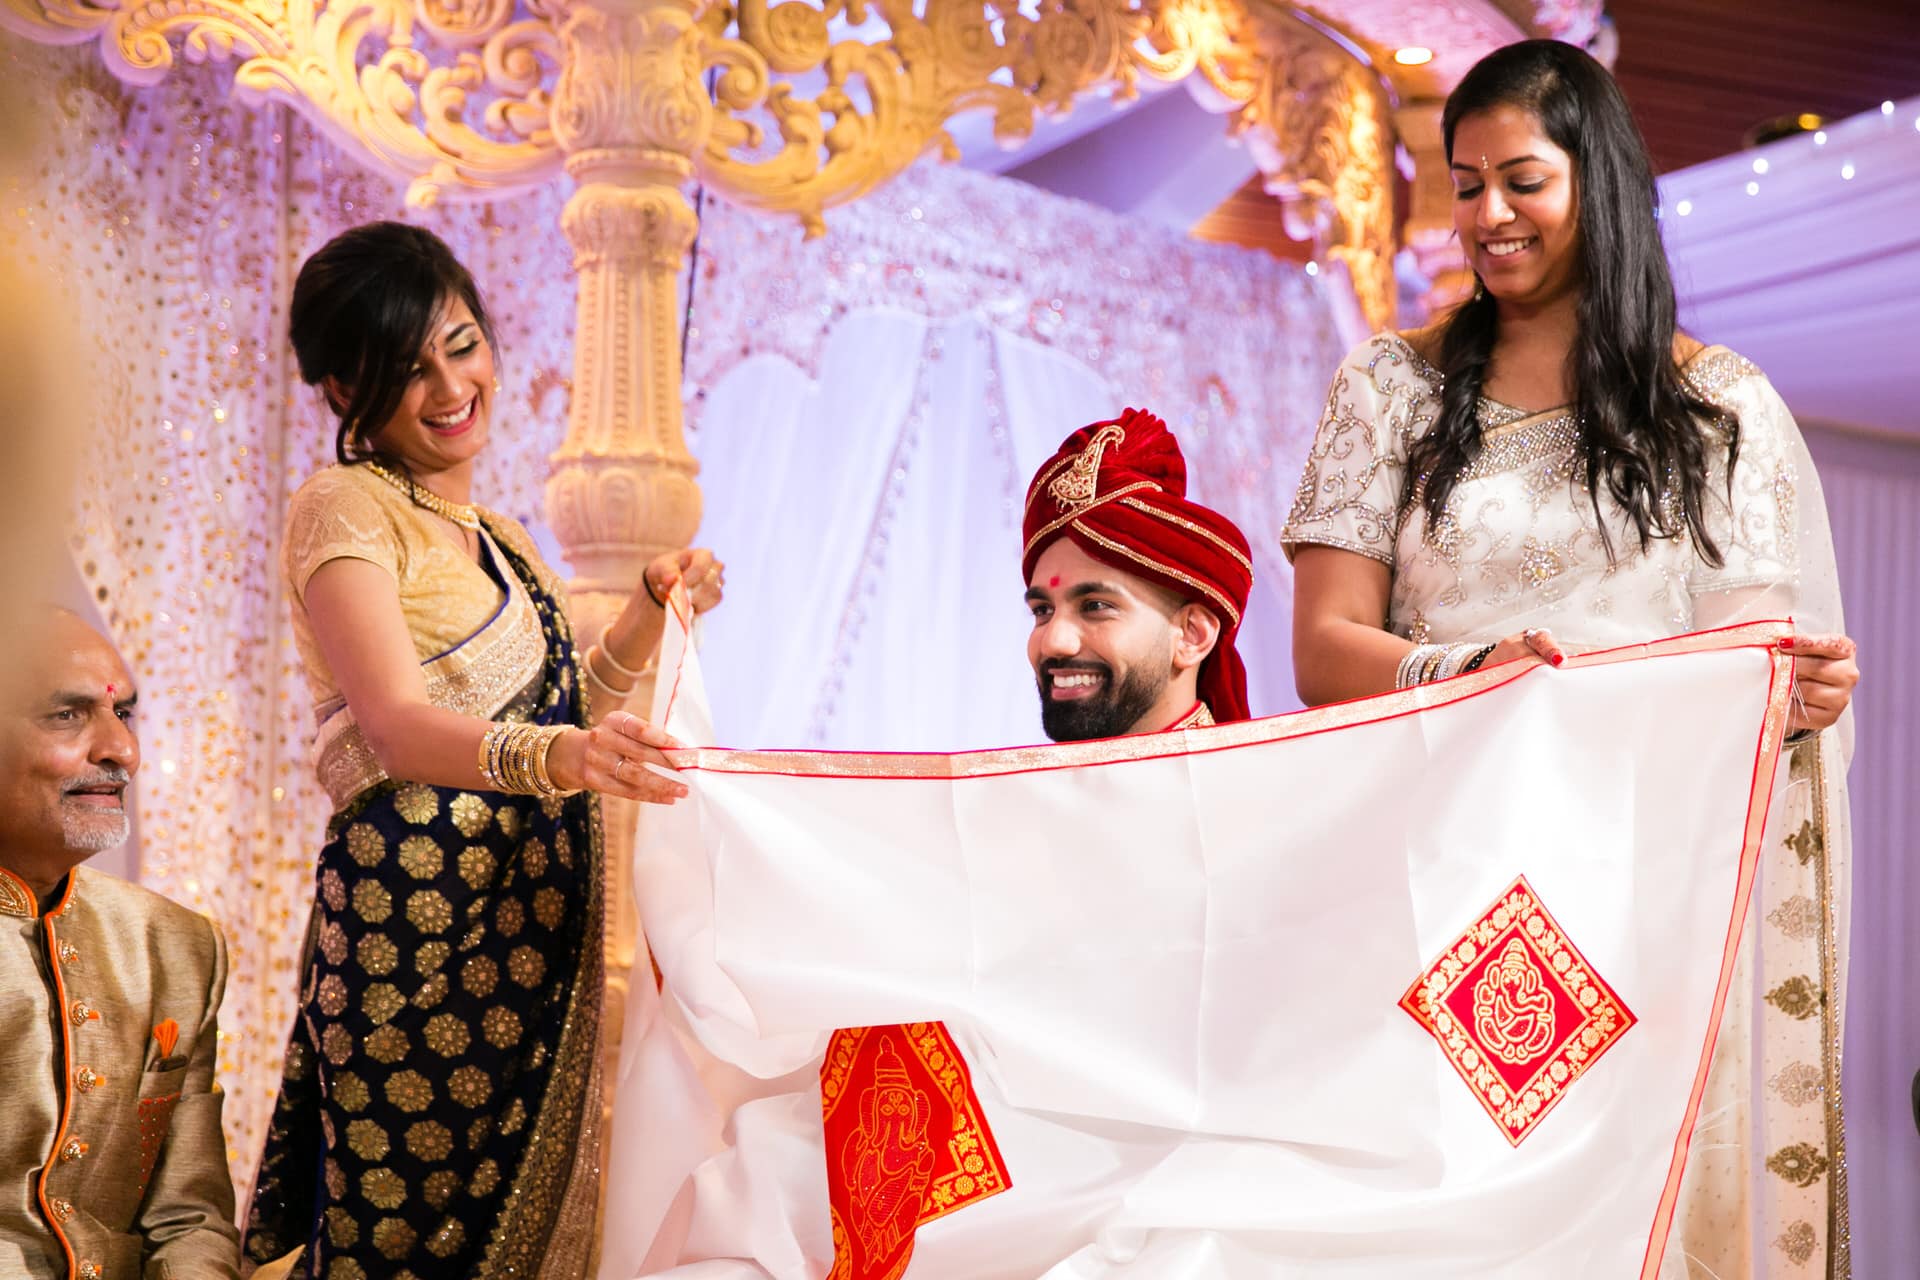 Groom's reaction to seeing bride during Hindu Wedding